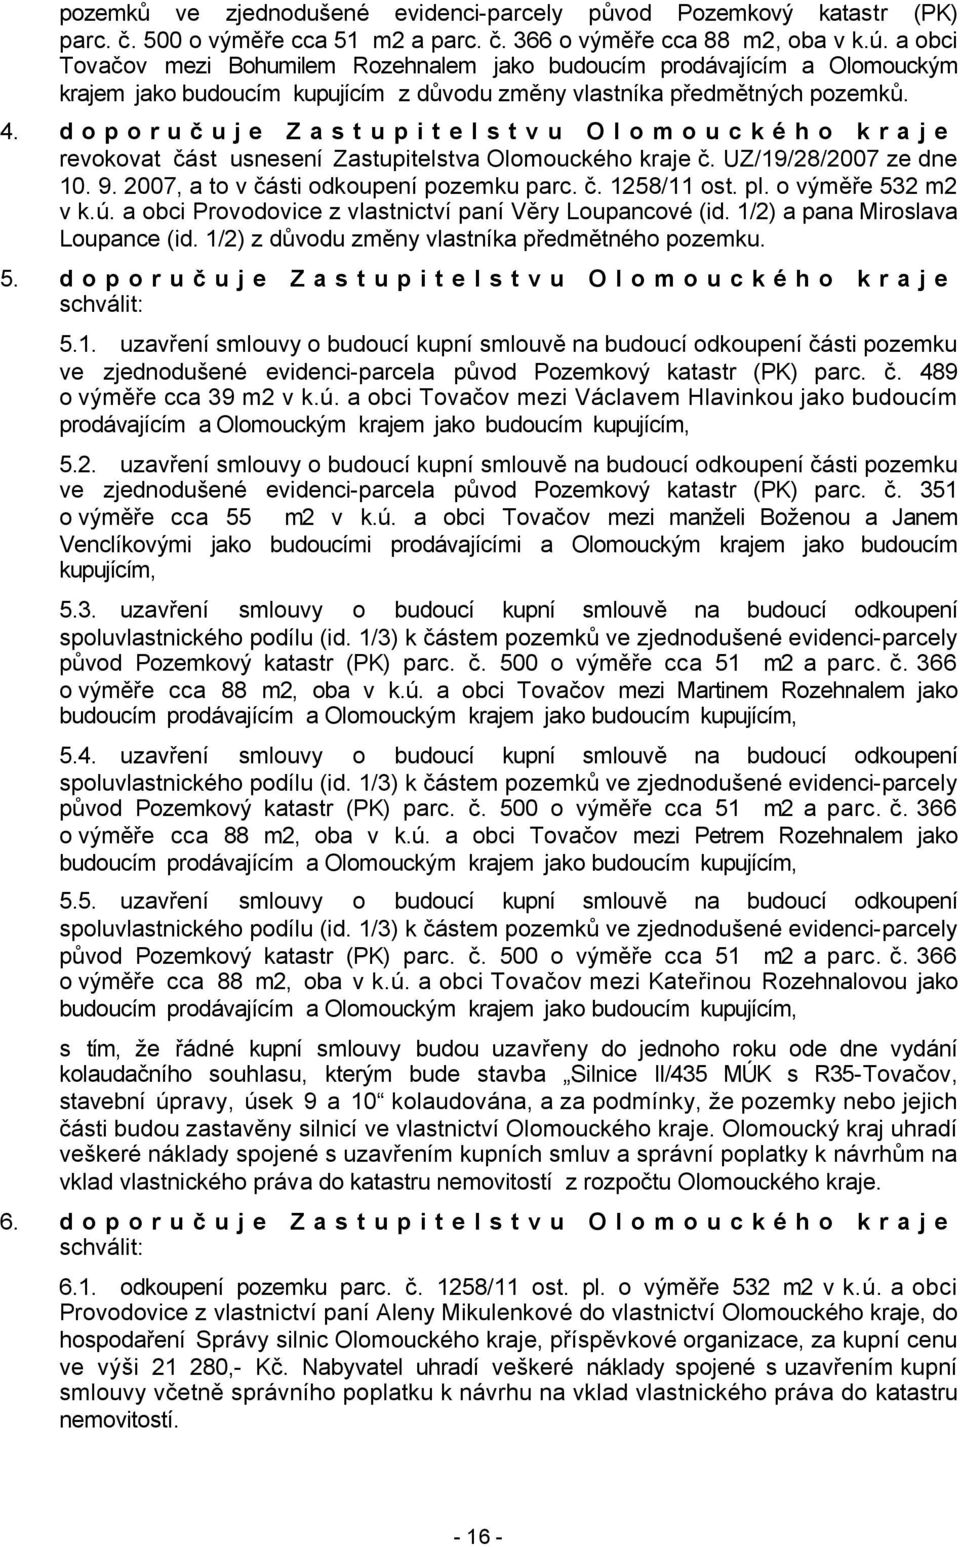 doporučuje Zastupitelstvu Olomouckého kraje revokovat část usnesení Zastupitelstva Olomouckého kraje č. UZ/19/28/2007 ze dne 10. 9. 2007, a to v části odkoupení pozemku parc. č. 1258/11 ost. pl.